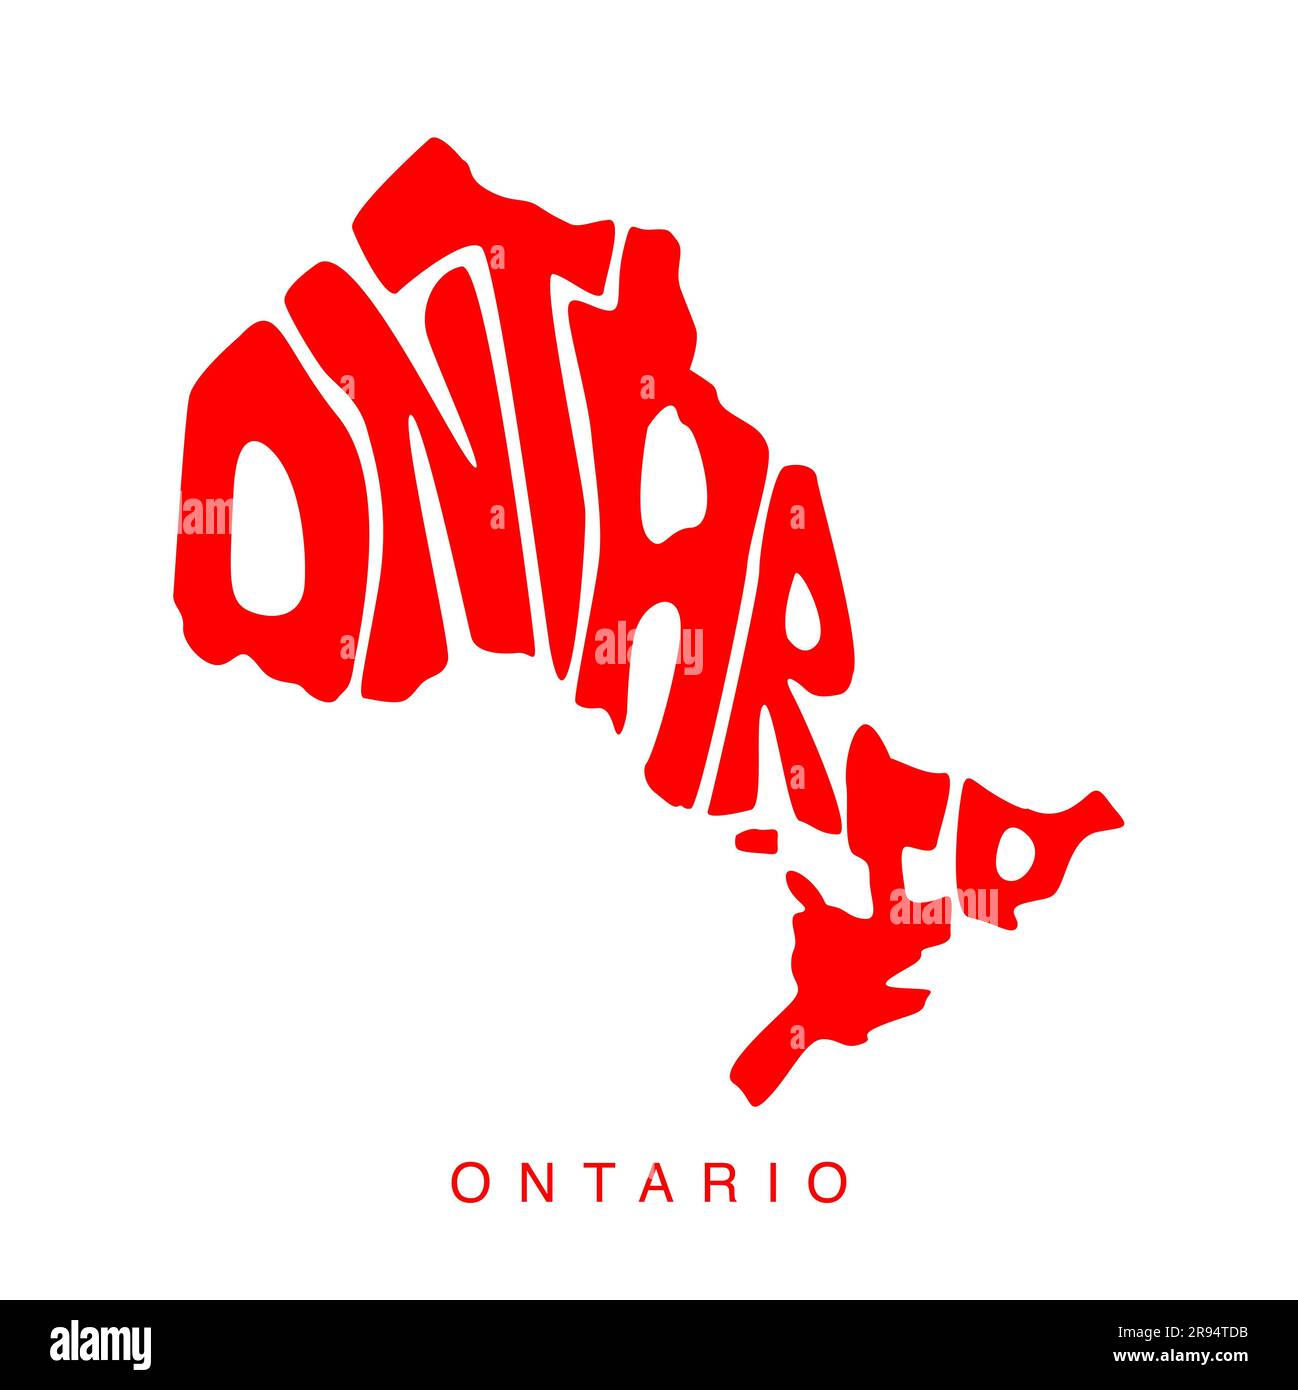 Eine detaillierte Vektordarstellung der kanadischen Provinz Ontario mit dem Namen der Provinz in Großbuchstaben auf weißem Hintergrund Stockfoto